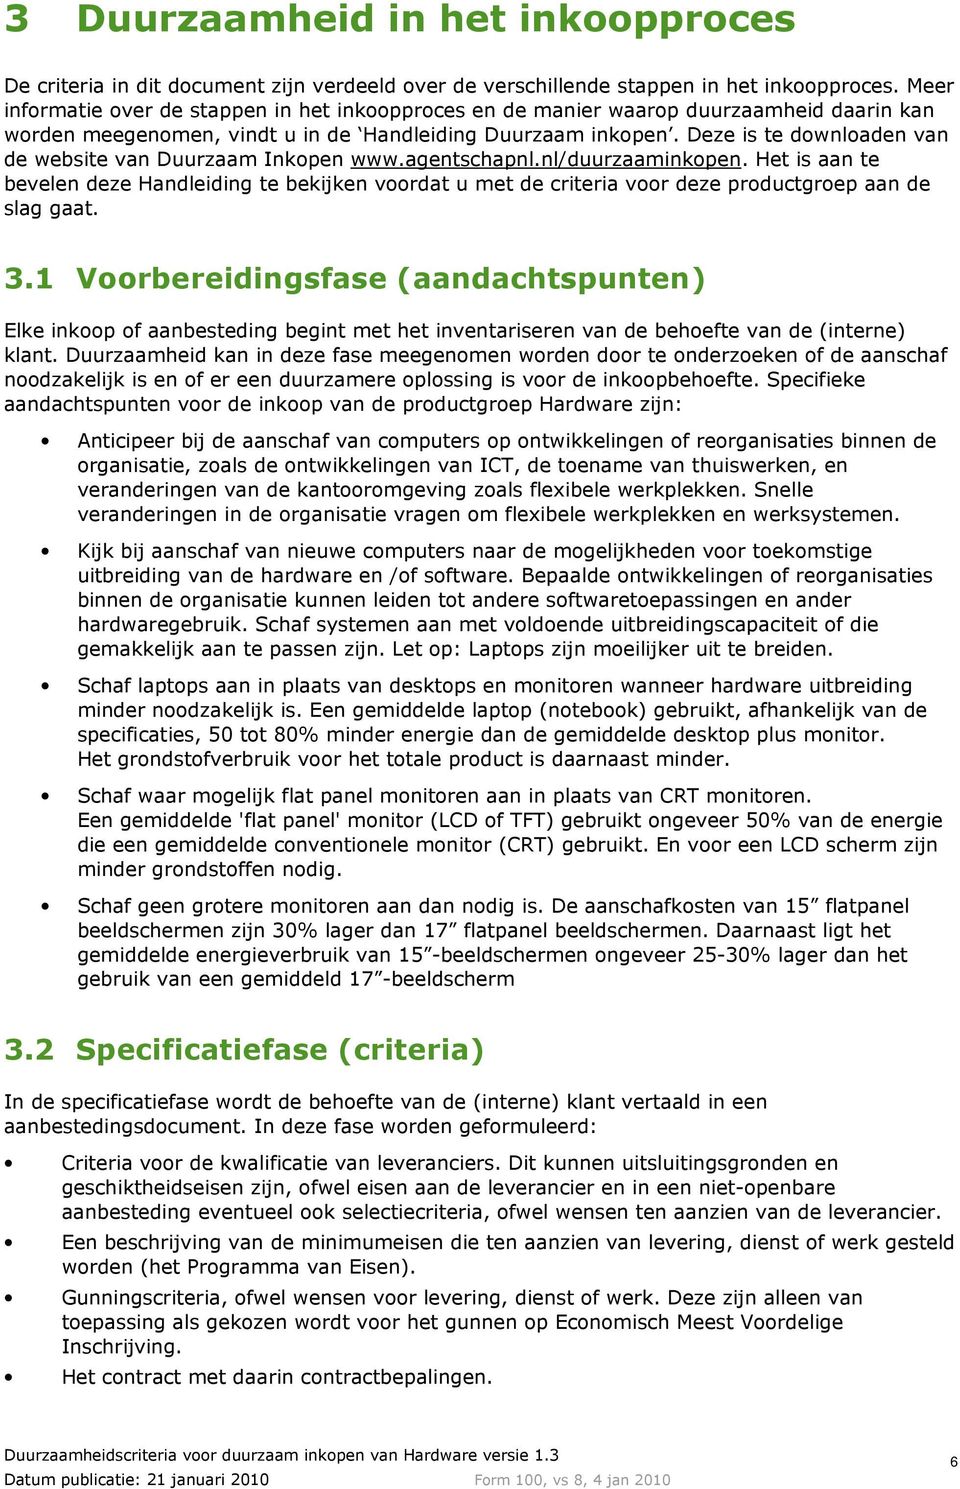 Deze is te downloaden van de website van Duurzaam Inkopen www.agentschapnl.nl/duurzaaminkopen.